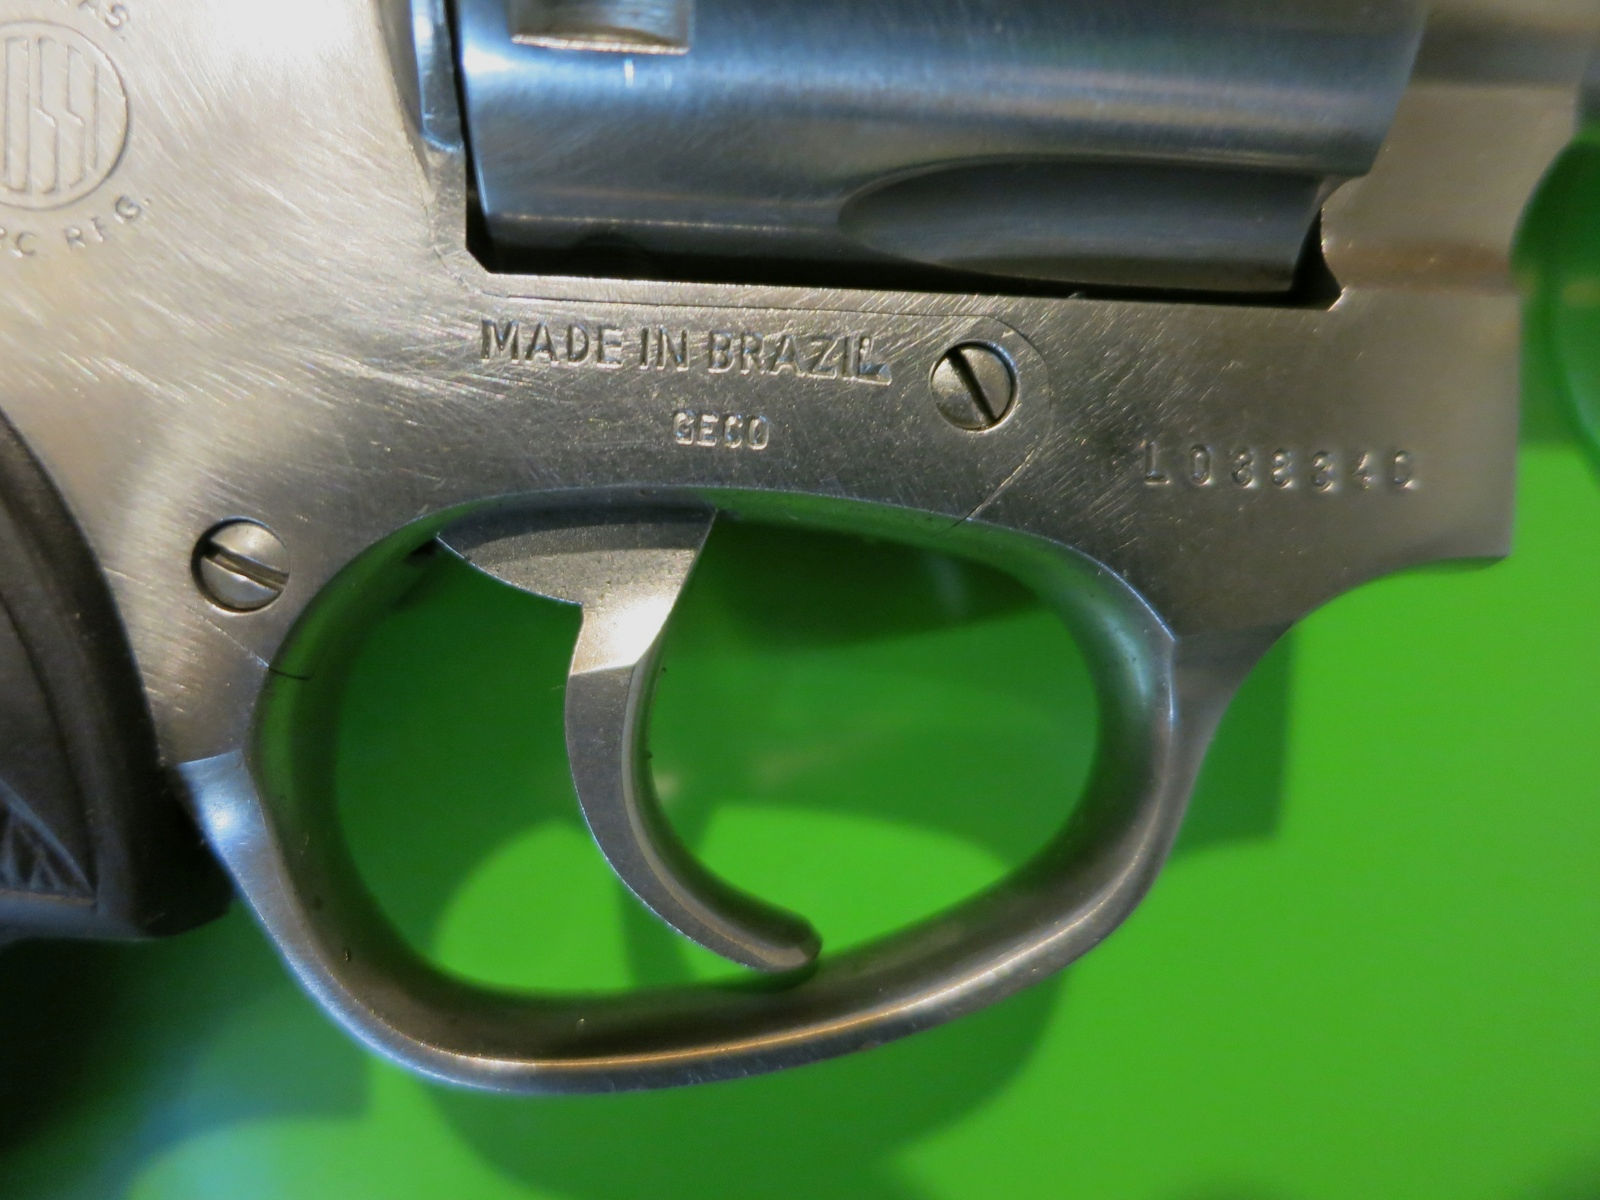 Rossi Interarms M518 Revolver .22lr, 6 Schuss, DA/SA, Amadeo-Rossi M-518,  Fallenjagd   #91